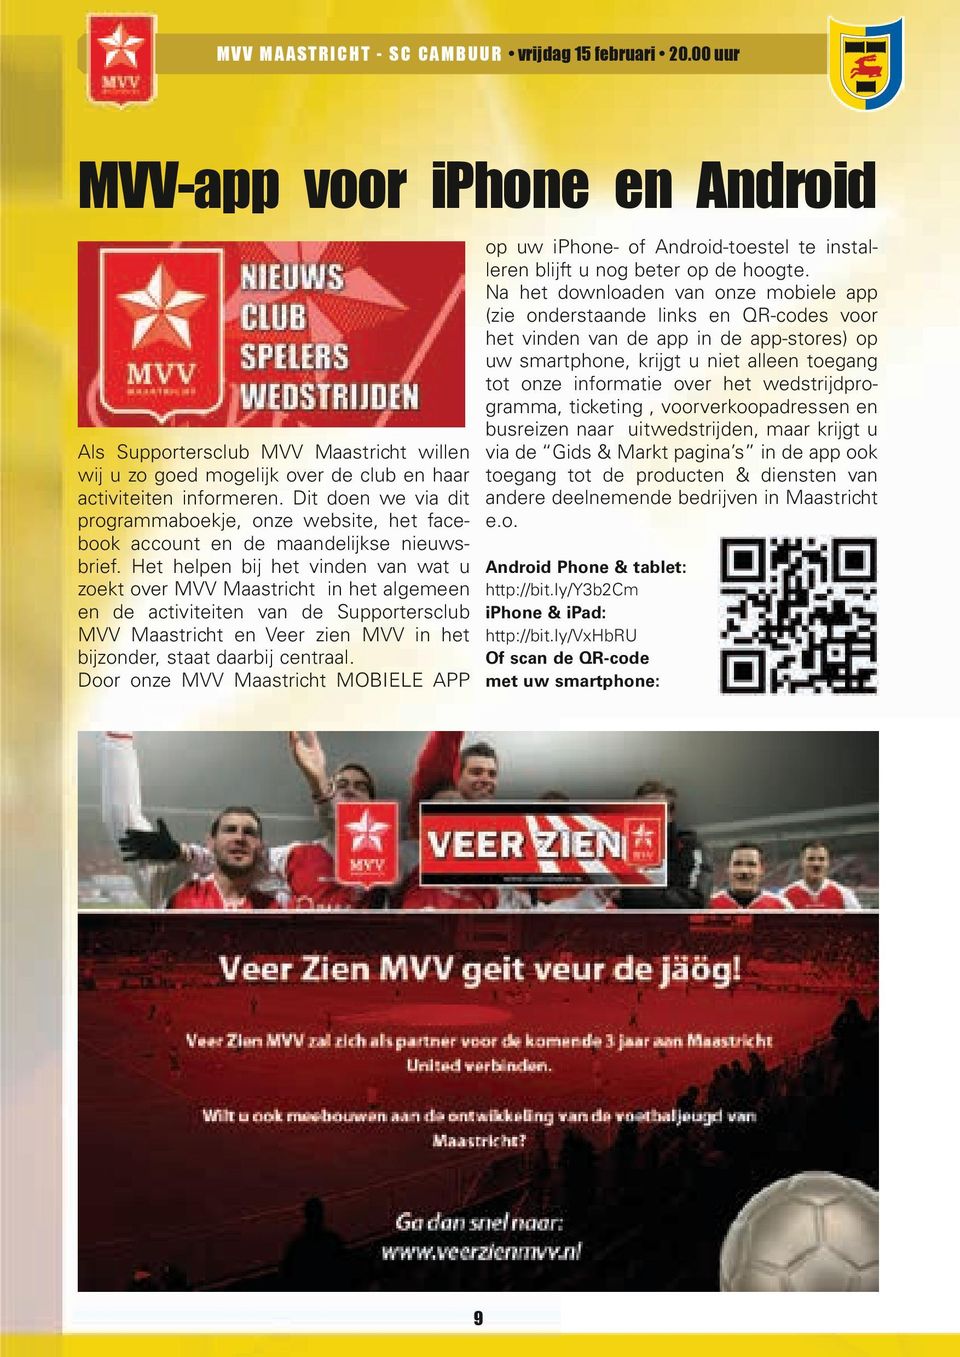 Het helpen bij het vinden van wat u zoekt over MVV Maastricht in het algemeen en de activiteiten van de Supportersclub MVV Maastricht en Veer zien MVV in het bijzonder, staat daarbij centraal.